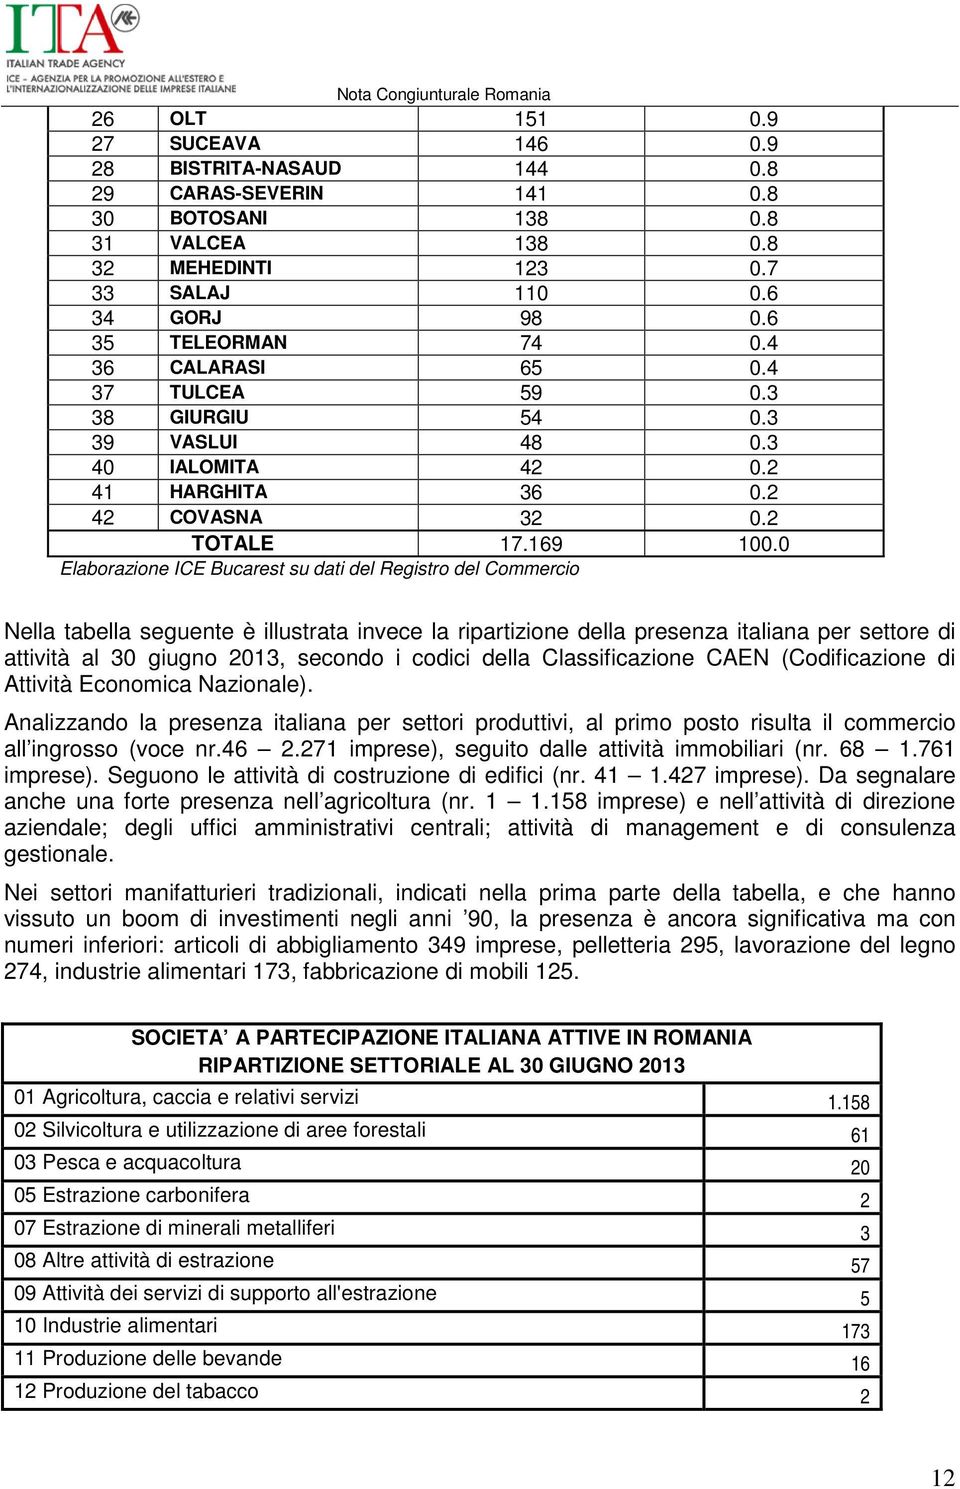 0 Elaborazione ICE Bucarest su dati del Registro del Commercio Nella tabella seguente è illustrata invece la ripartizione della presenza italiana per settore di attività al 30 giugno, secondo i